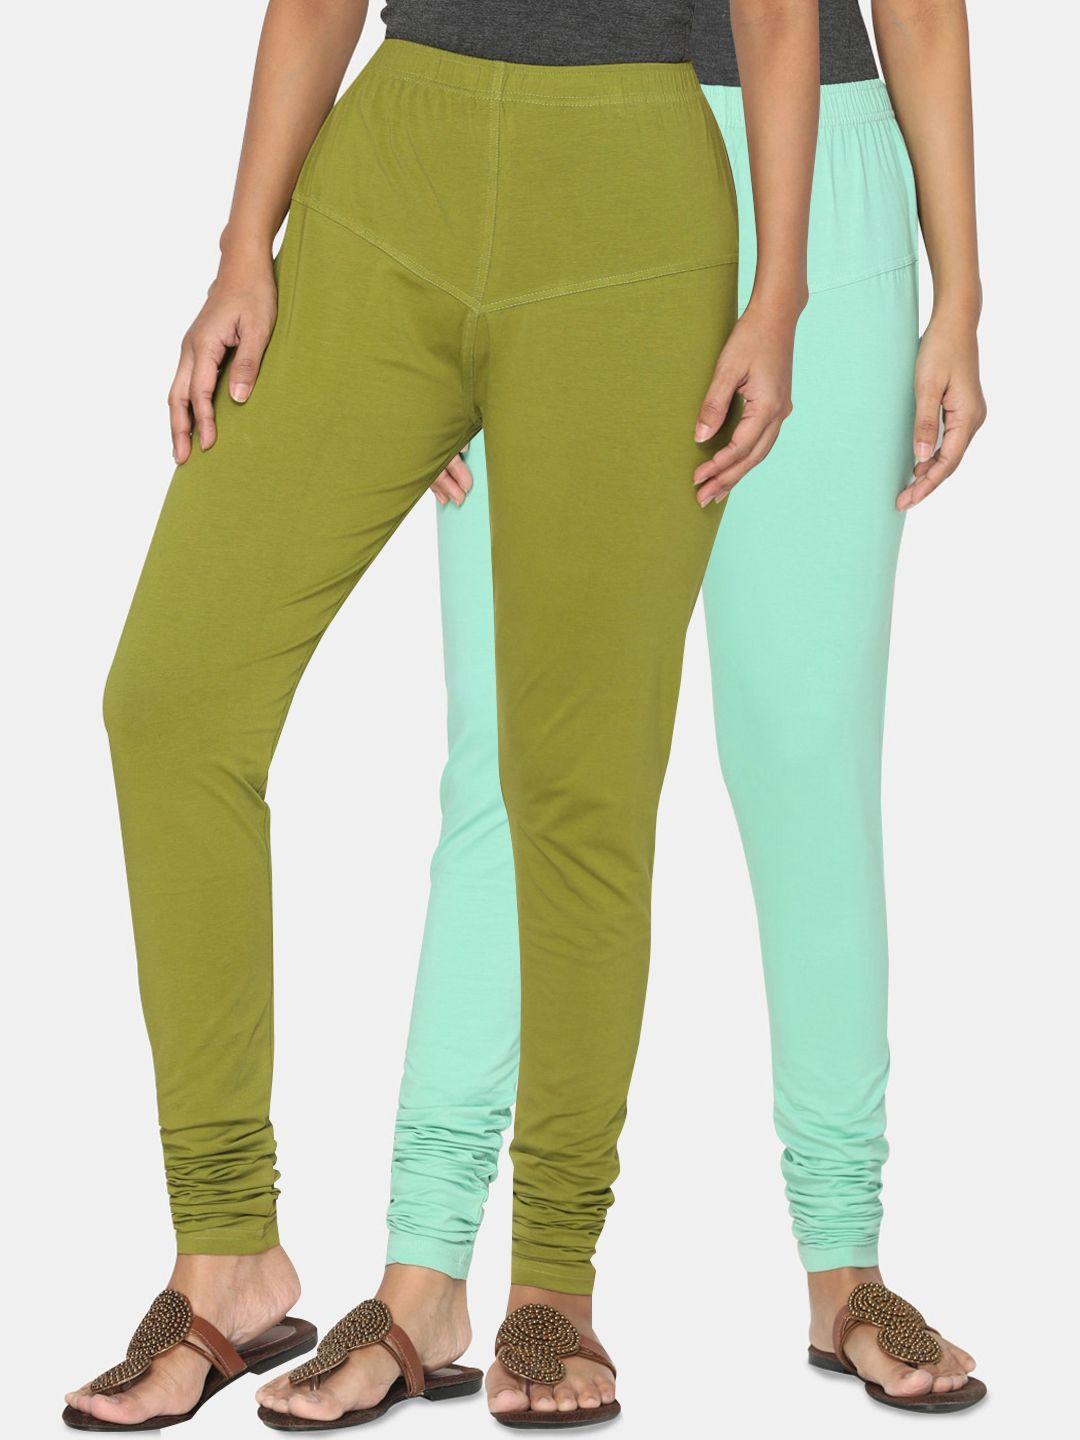 tsg bliss women olive green & mint green pack of 2 solid churidar-length leggings